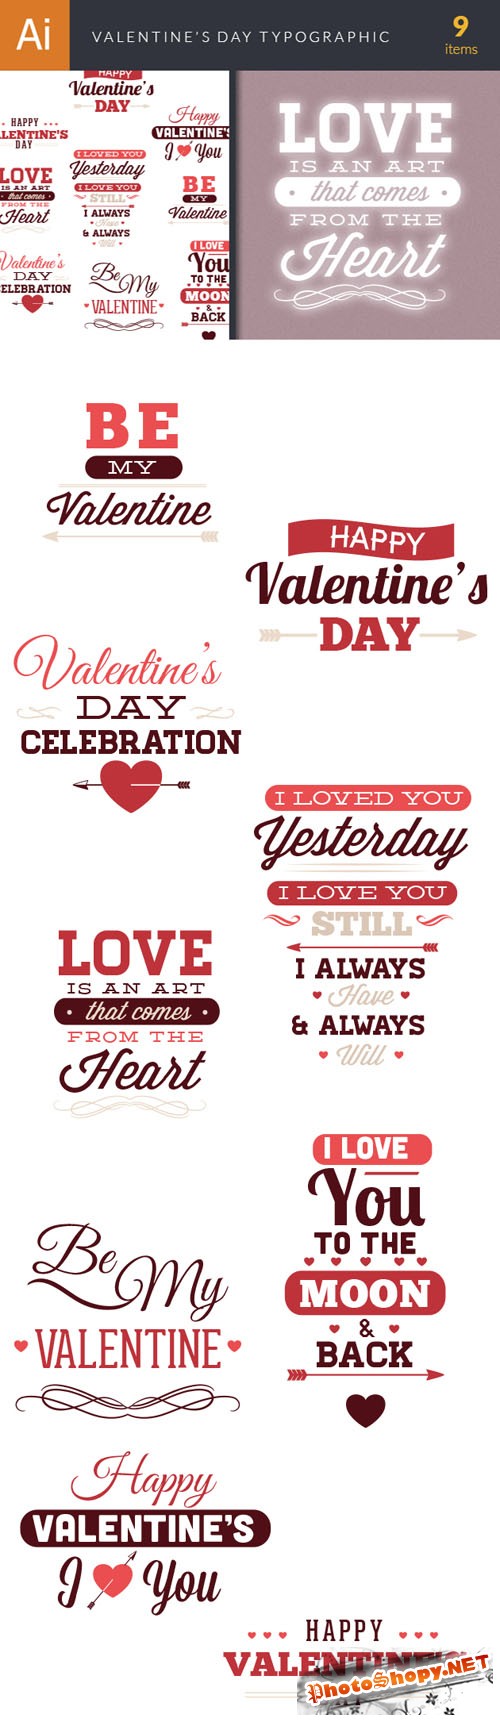 Valentine's Day Typographic Vector Elements Set 1